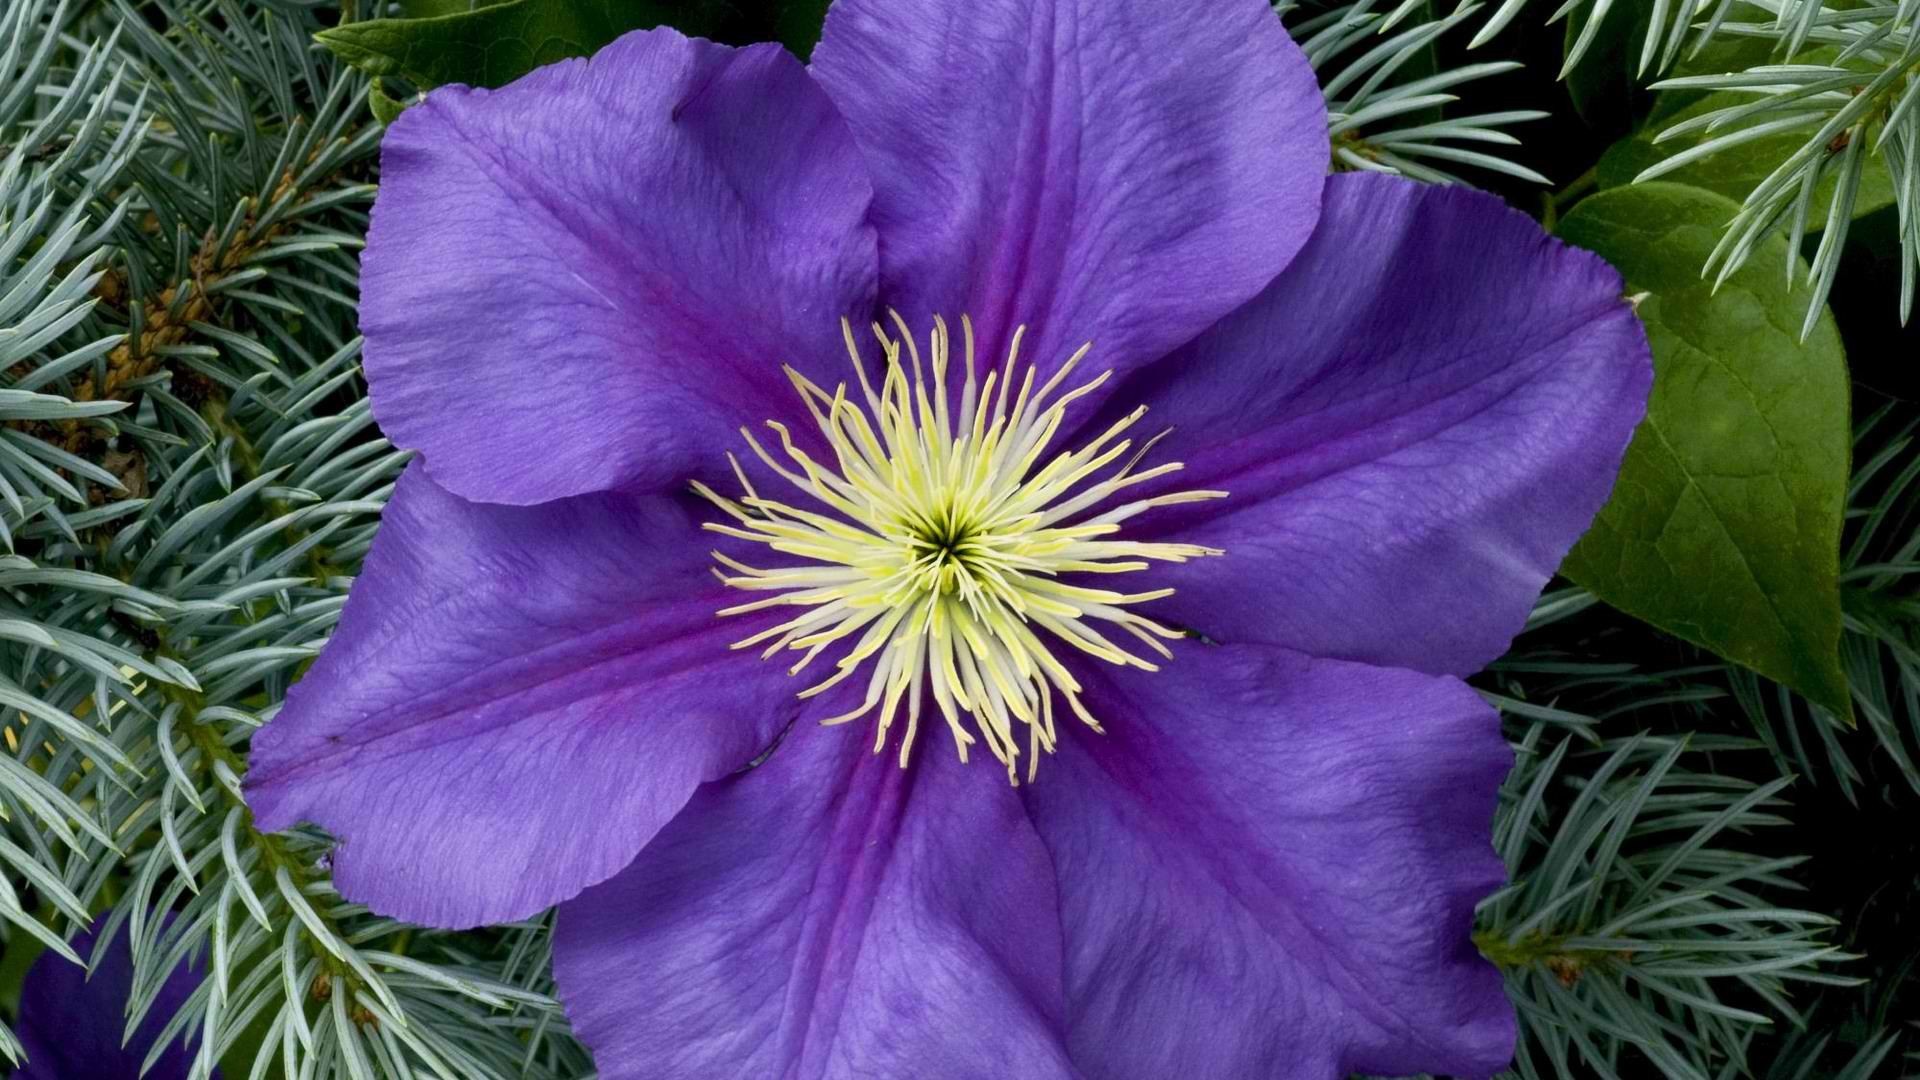 General 1920x1080 purple flowers flowers plants